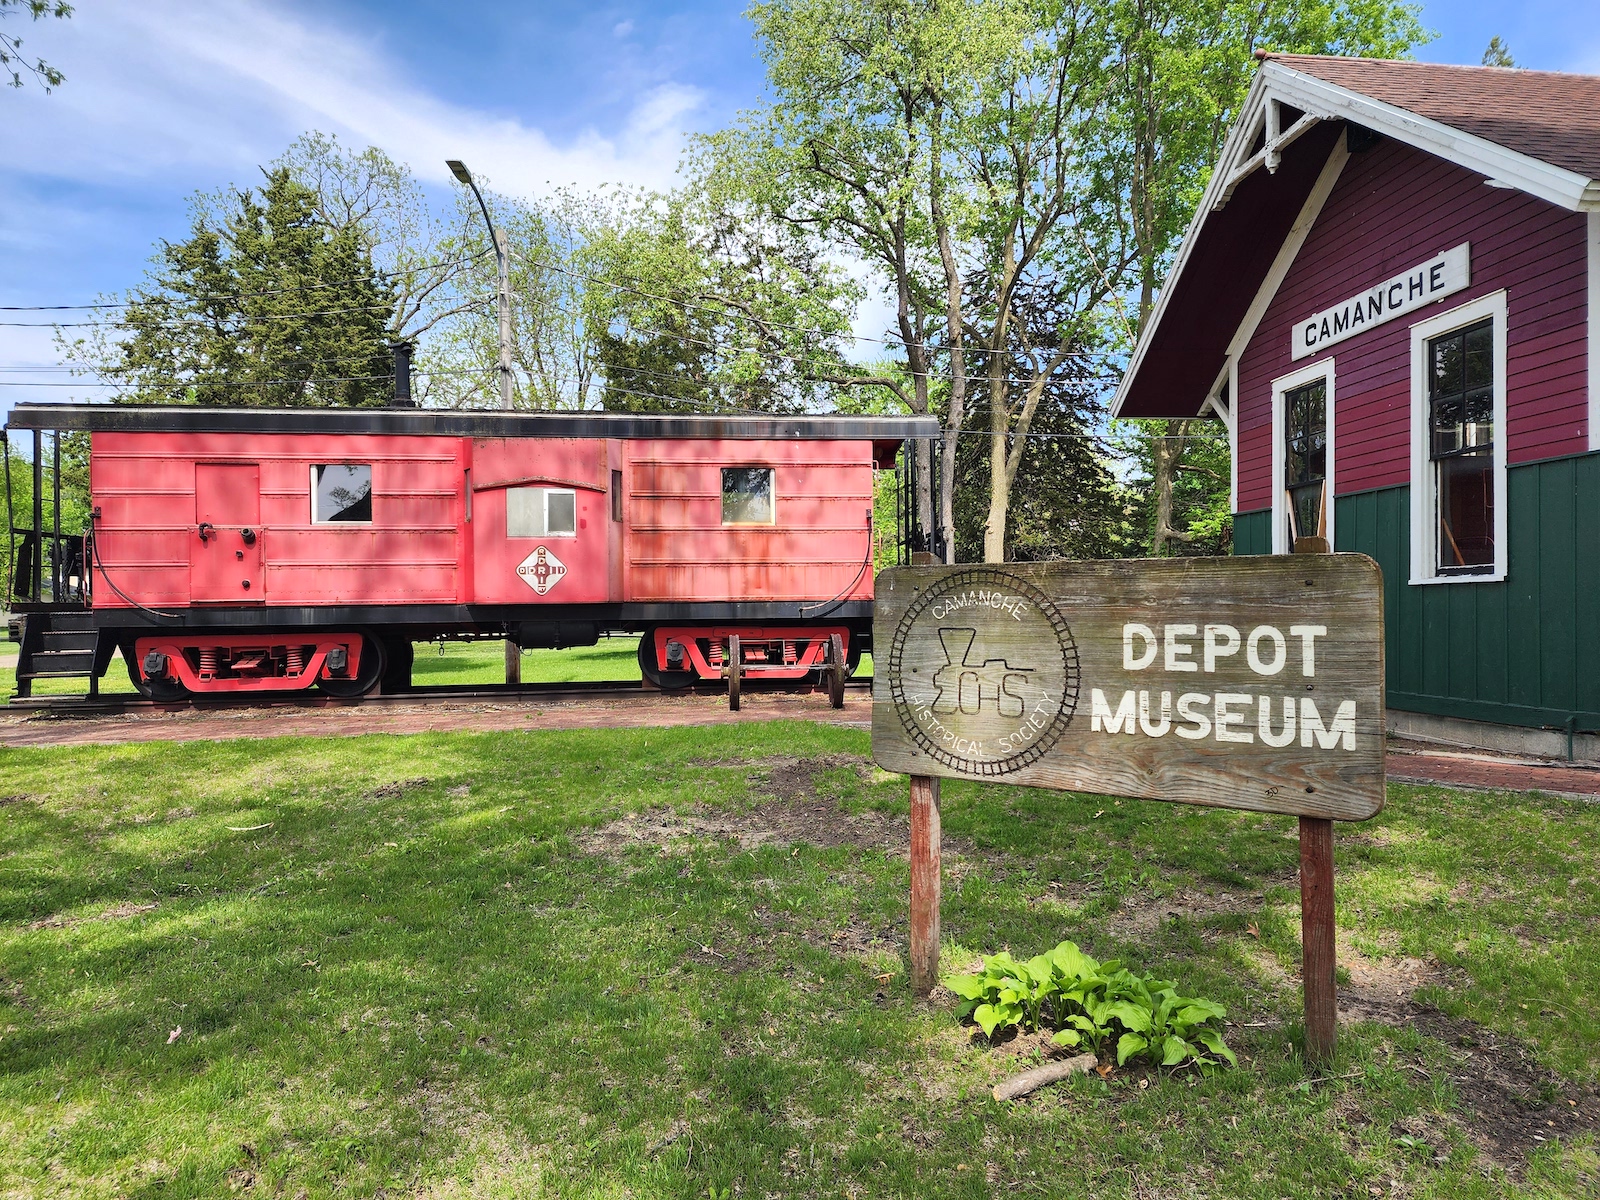 Un wagon de train rouge se trouve à l'extérieur du musée du dépôt de la Société historique de Camanche.